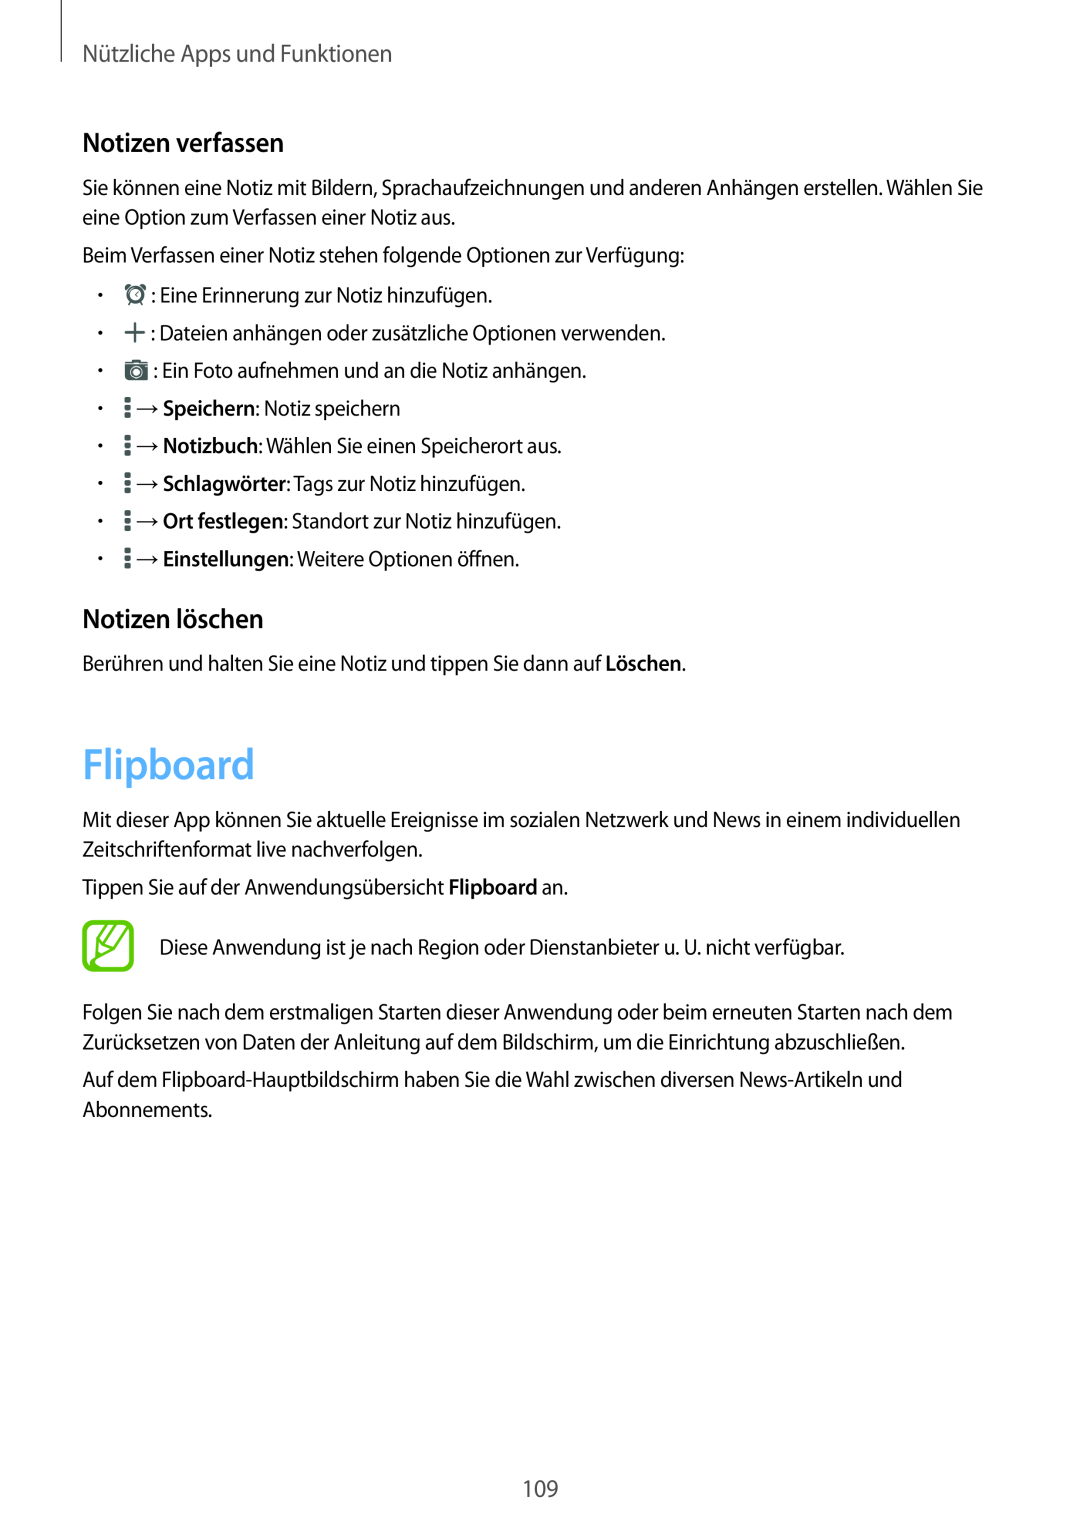 Samsung SM-T800NZWAATO, SM-T800NZWAEUR manual Flipboard, Notizen verfassen, Notizen löschen, Nützliche Apps und Funktionen 